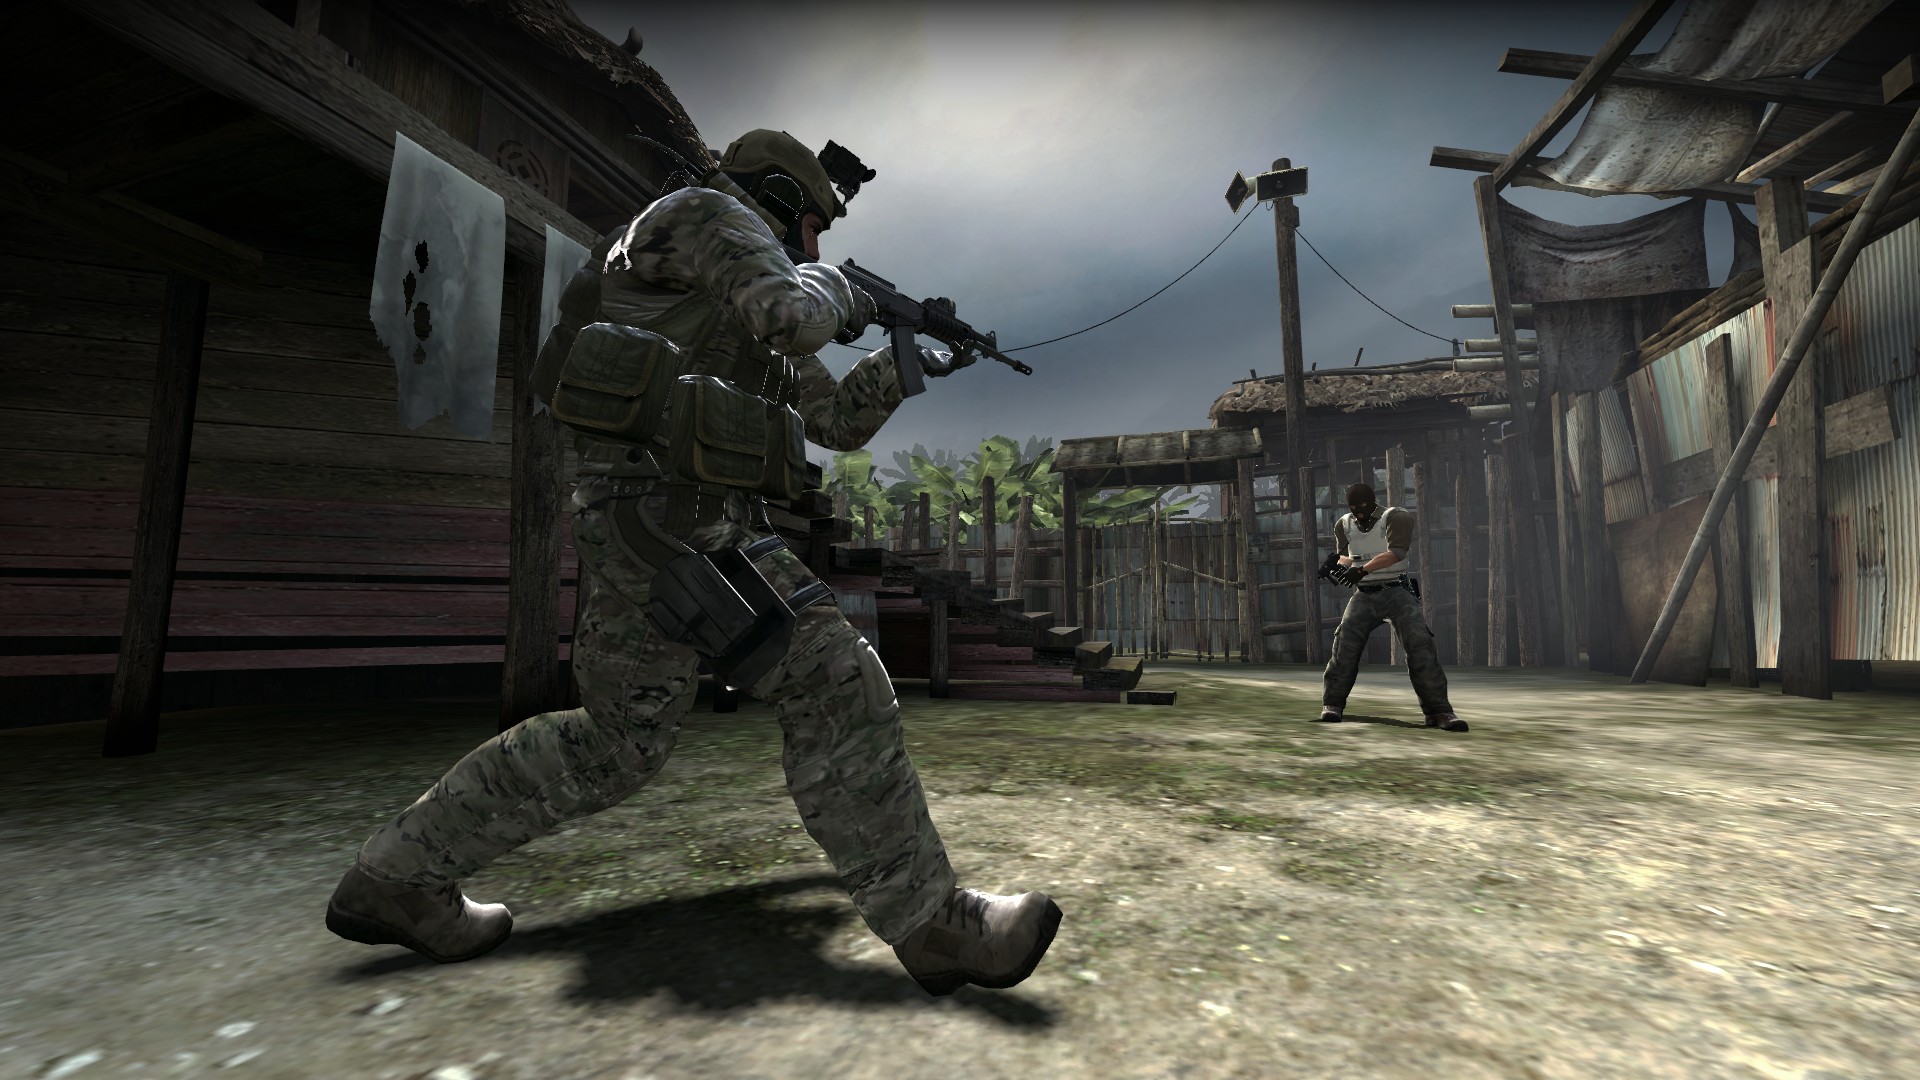 
Counter-Strike jeszcze mocniejszy
, Jak będzie wyglądać przyszłość e-sportu?